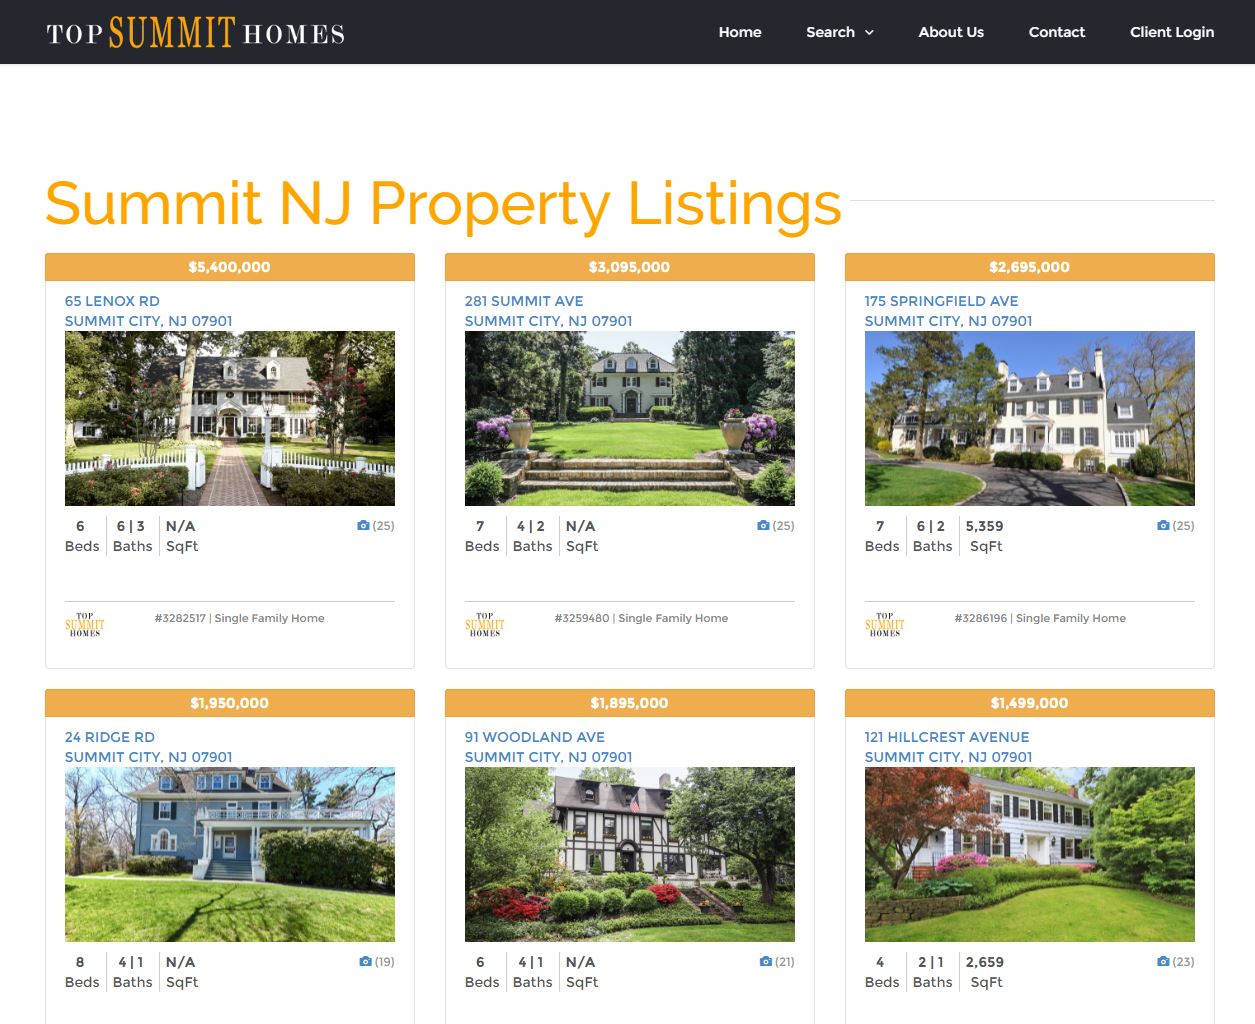 IDX Real Estate Websites